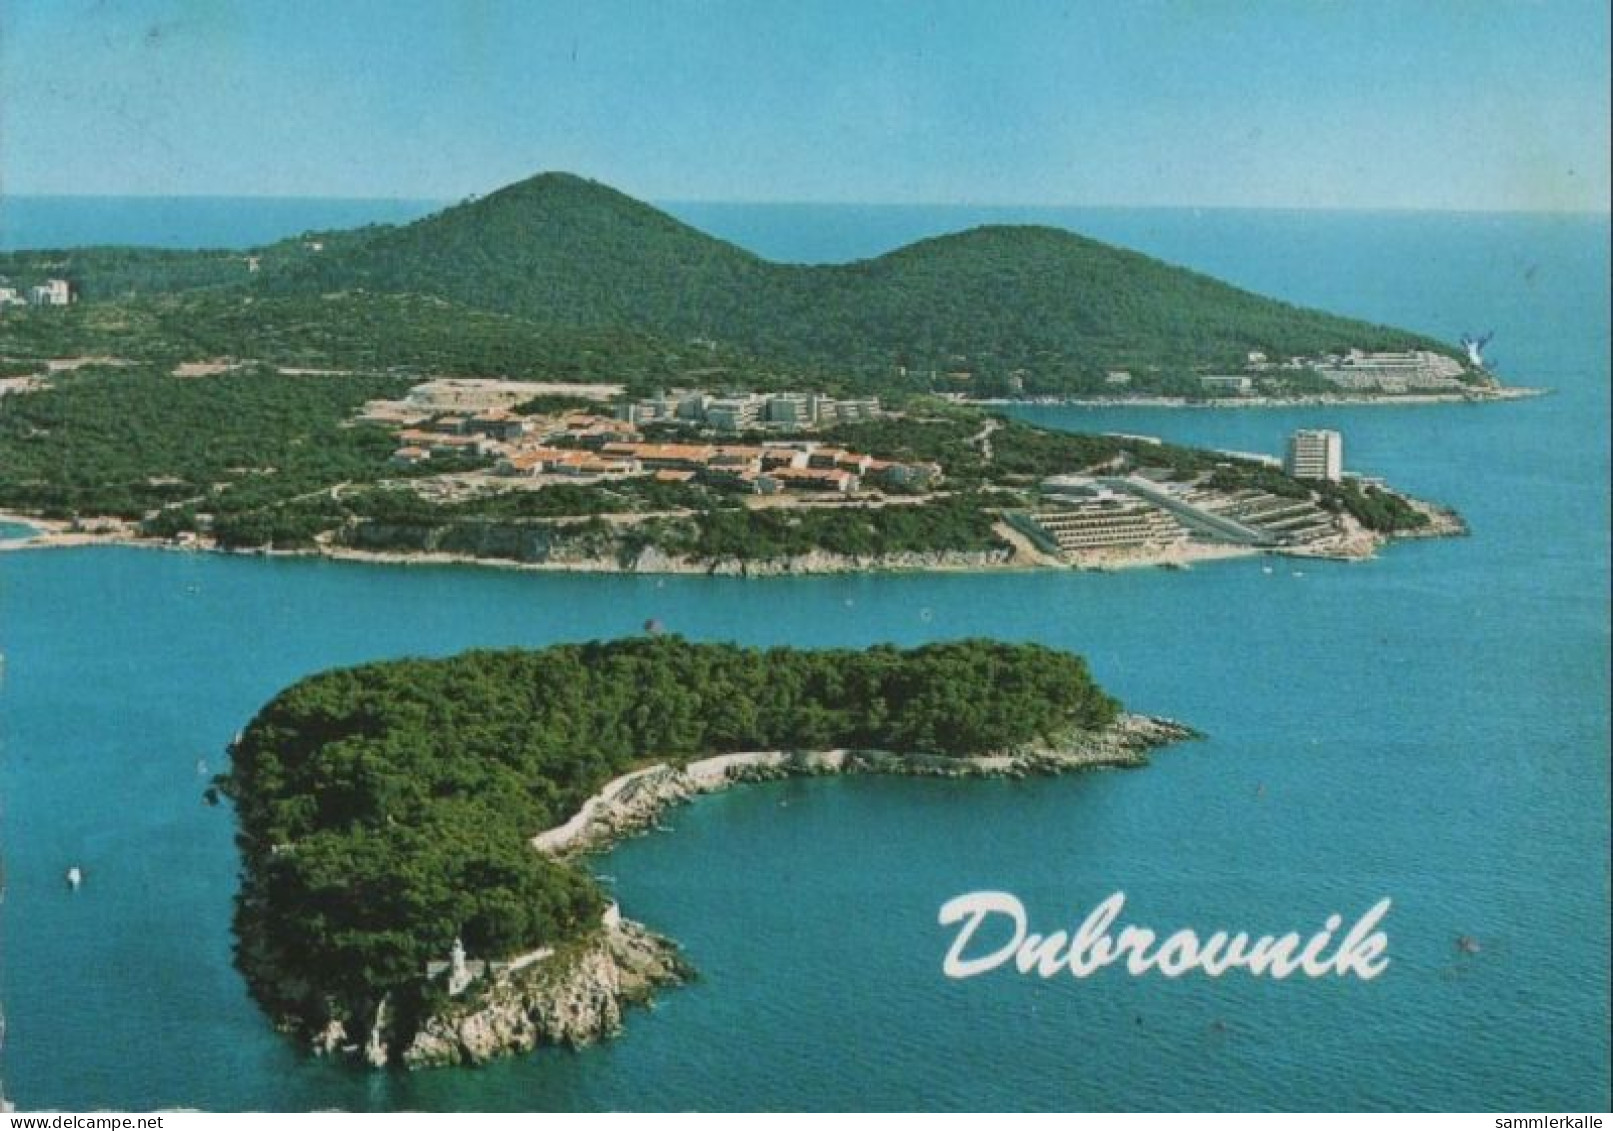 82604 - Kroatien - Dubrovnik - Turisticko Naselje Dubrava - Ca. 1980 - Kroatien